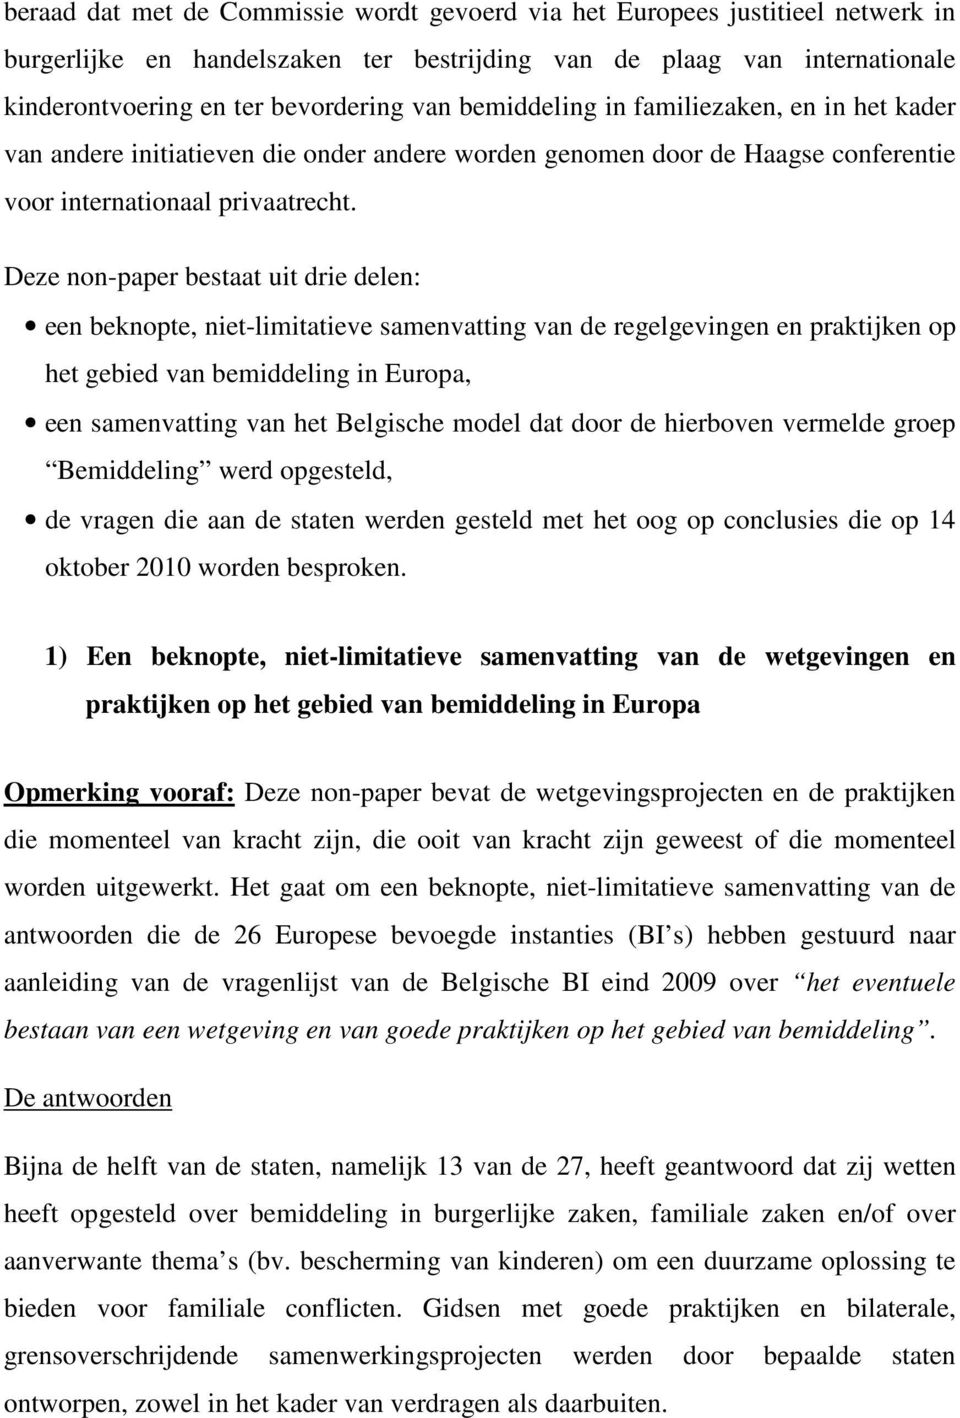 Deze non-paper bestaat uit drie delen: een beknopte, niet-limitatieve samenvatting van de regelgevingen en praktijken op het gebied van bemiddeling in Europa, een samenvatting van het Belgische model